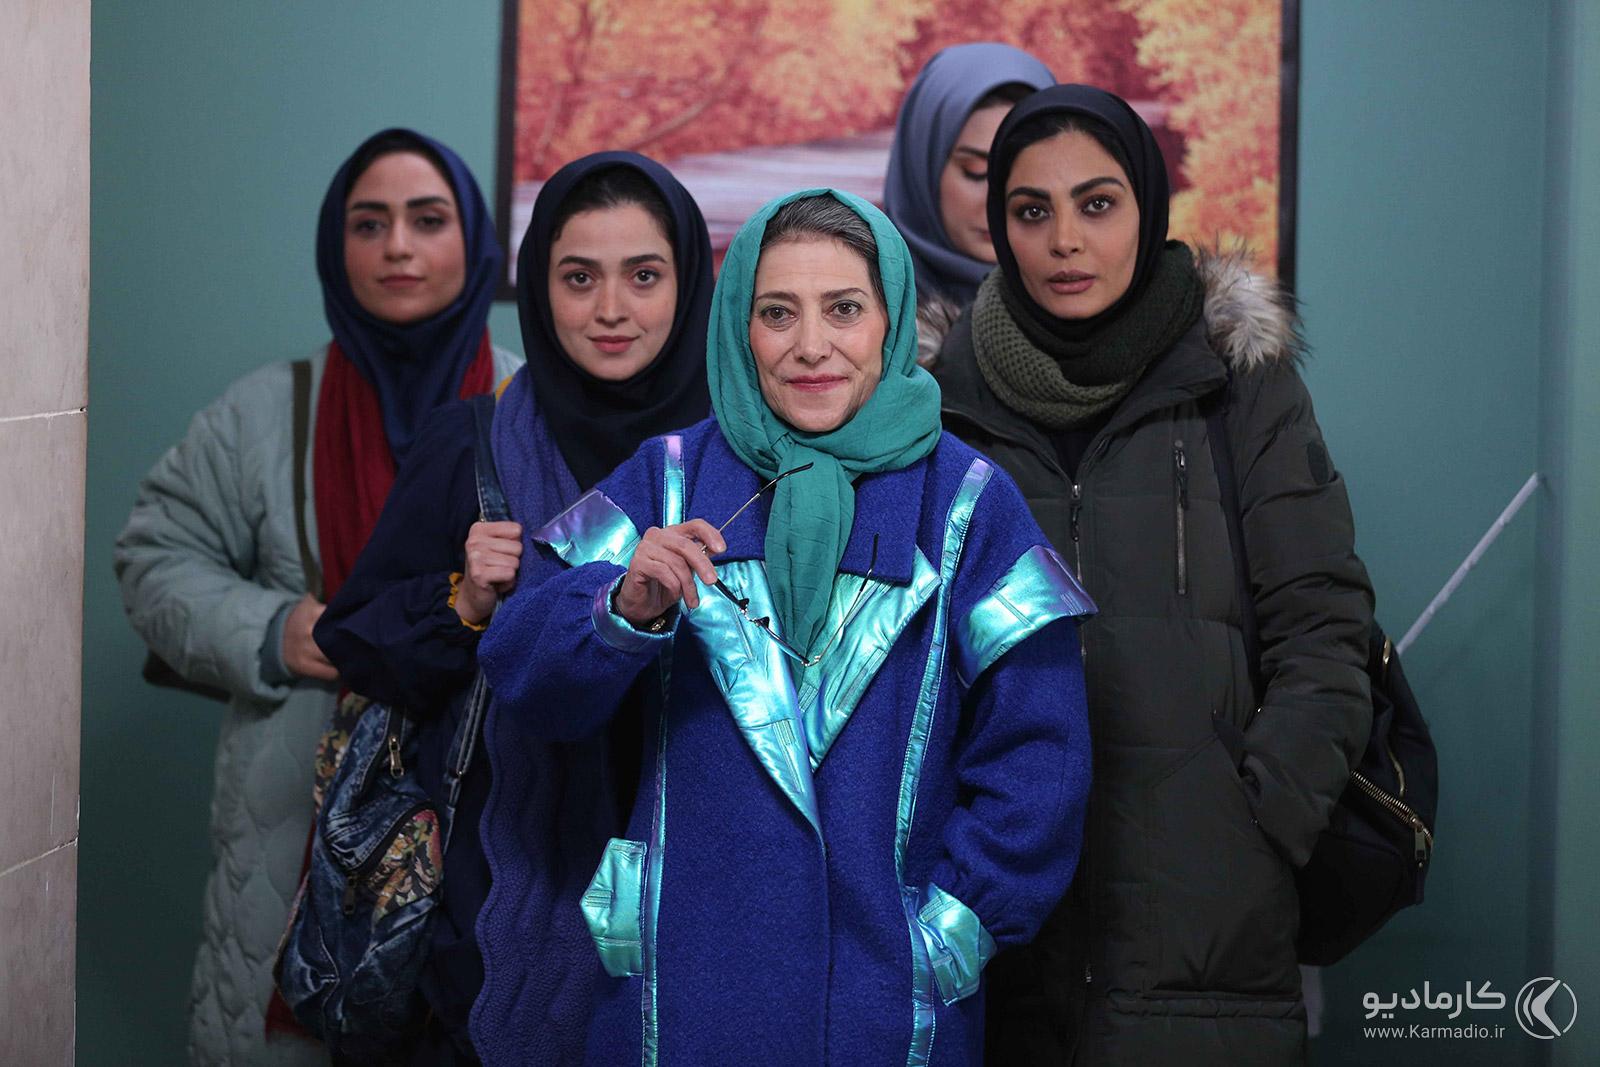 رویا افشار در نقش گوهر احمدی در سریال آنتن